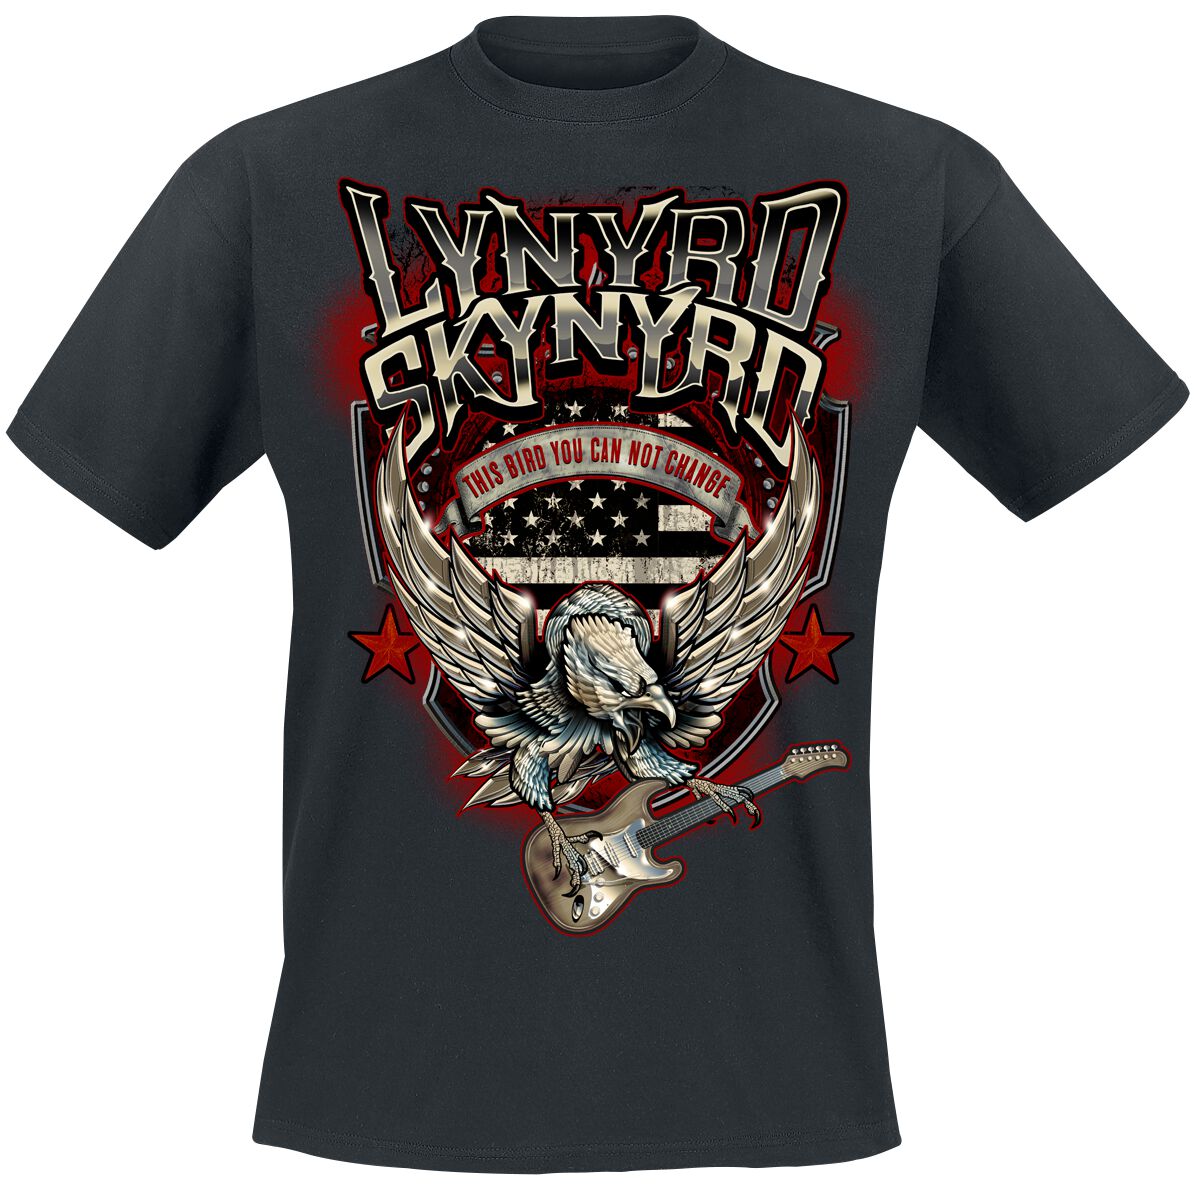 Lynyrd Skynyrd Bird With Guitar T-Shirt black